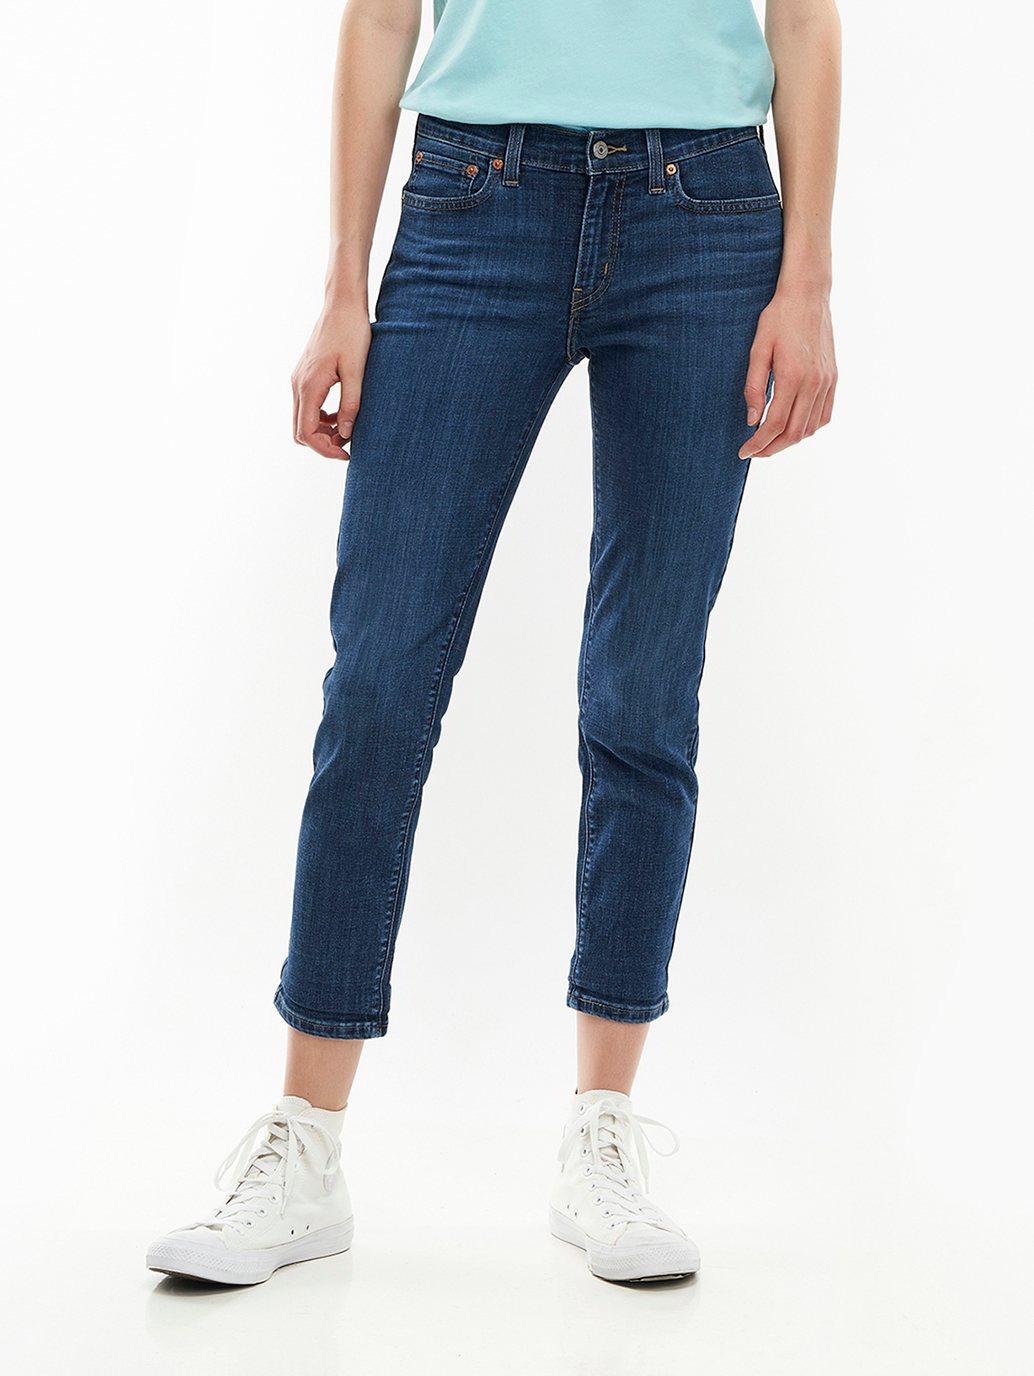 Buy Levi's® Women's New Boyfriend Jeans | Levi's® Official Online Store SG